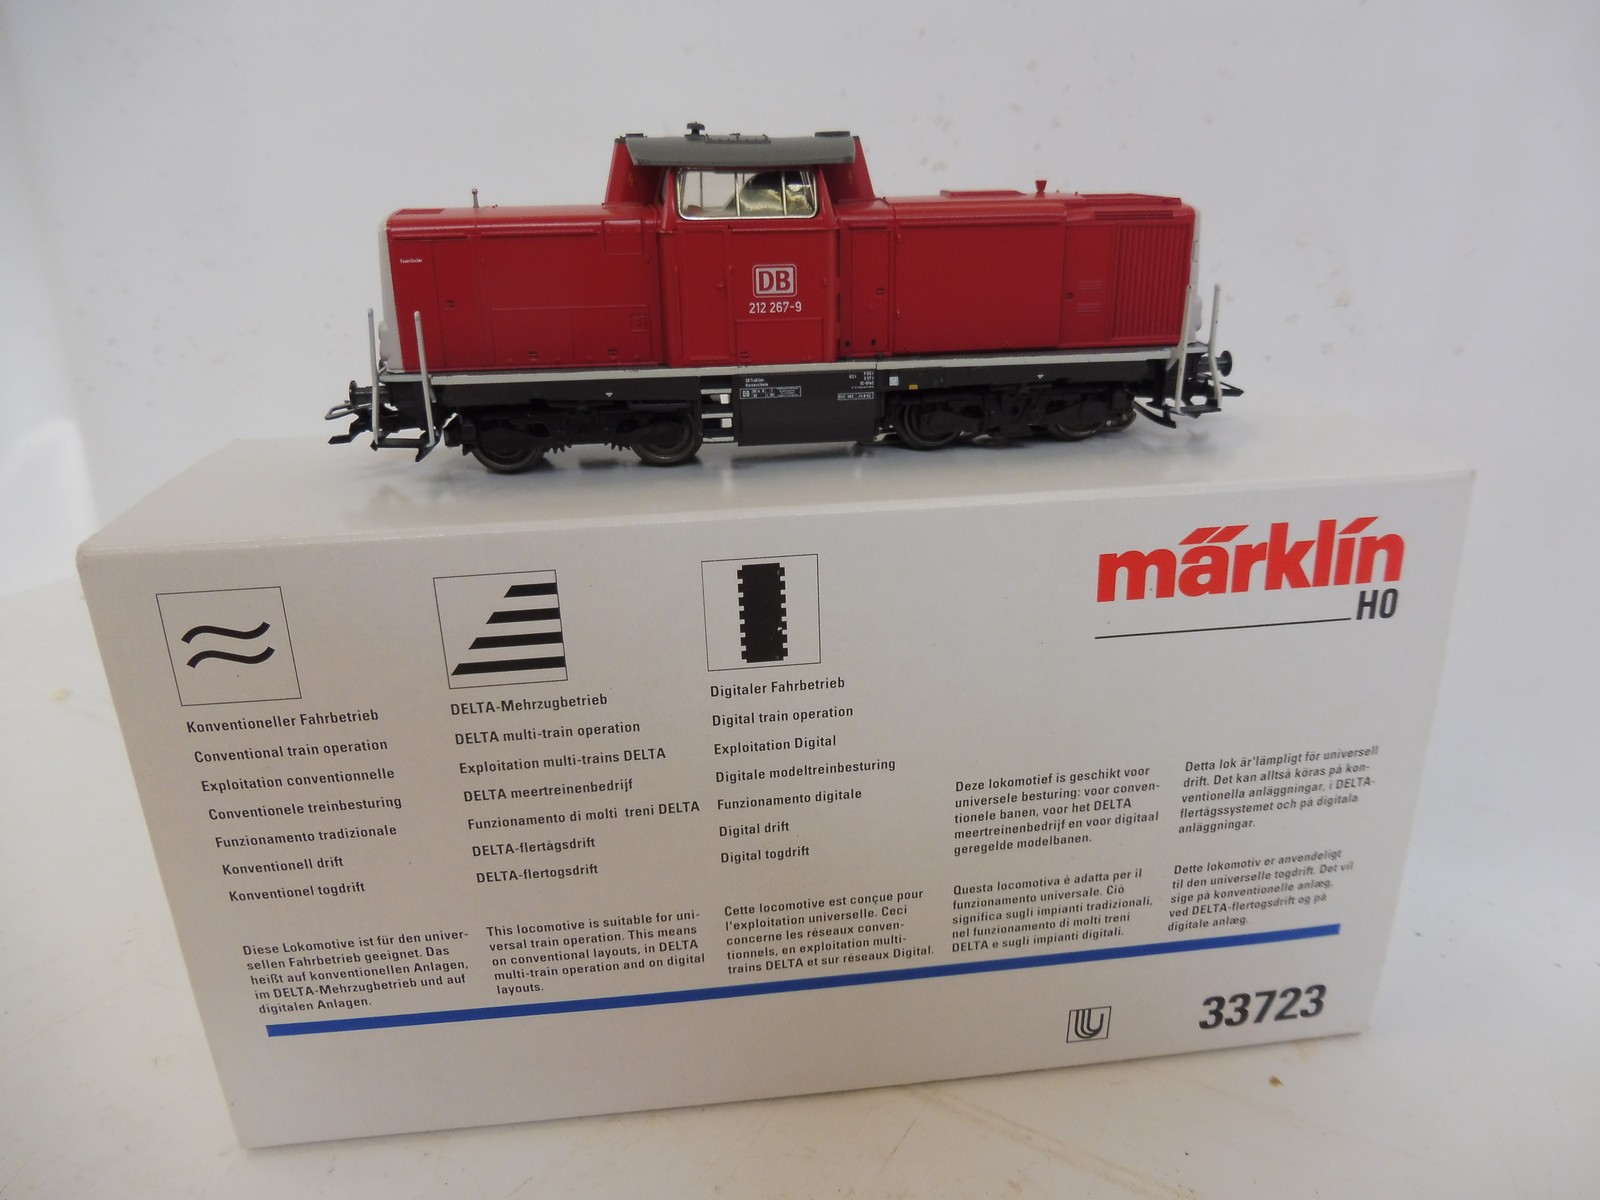 A boxed Marklin HO gauge locomotive, no. 33723. - Image 2 of 2